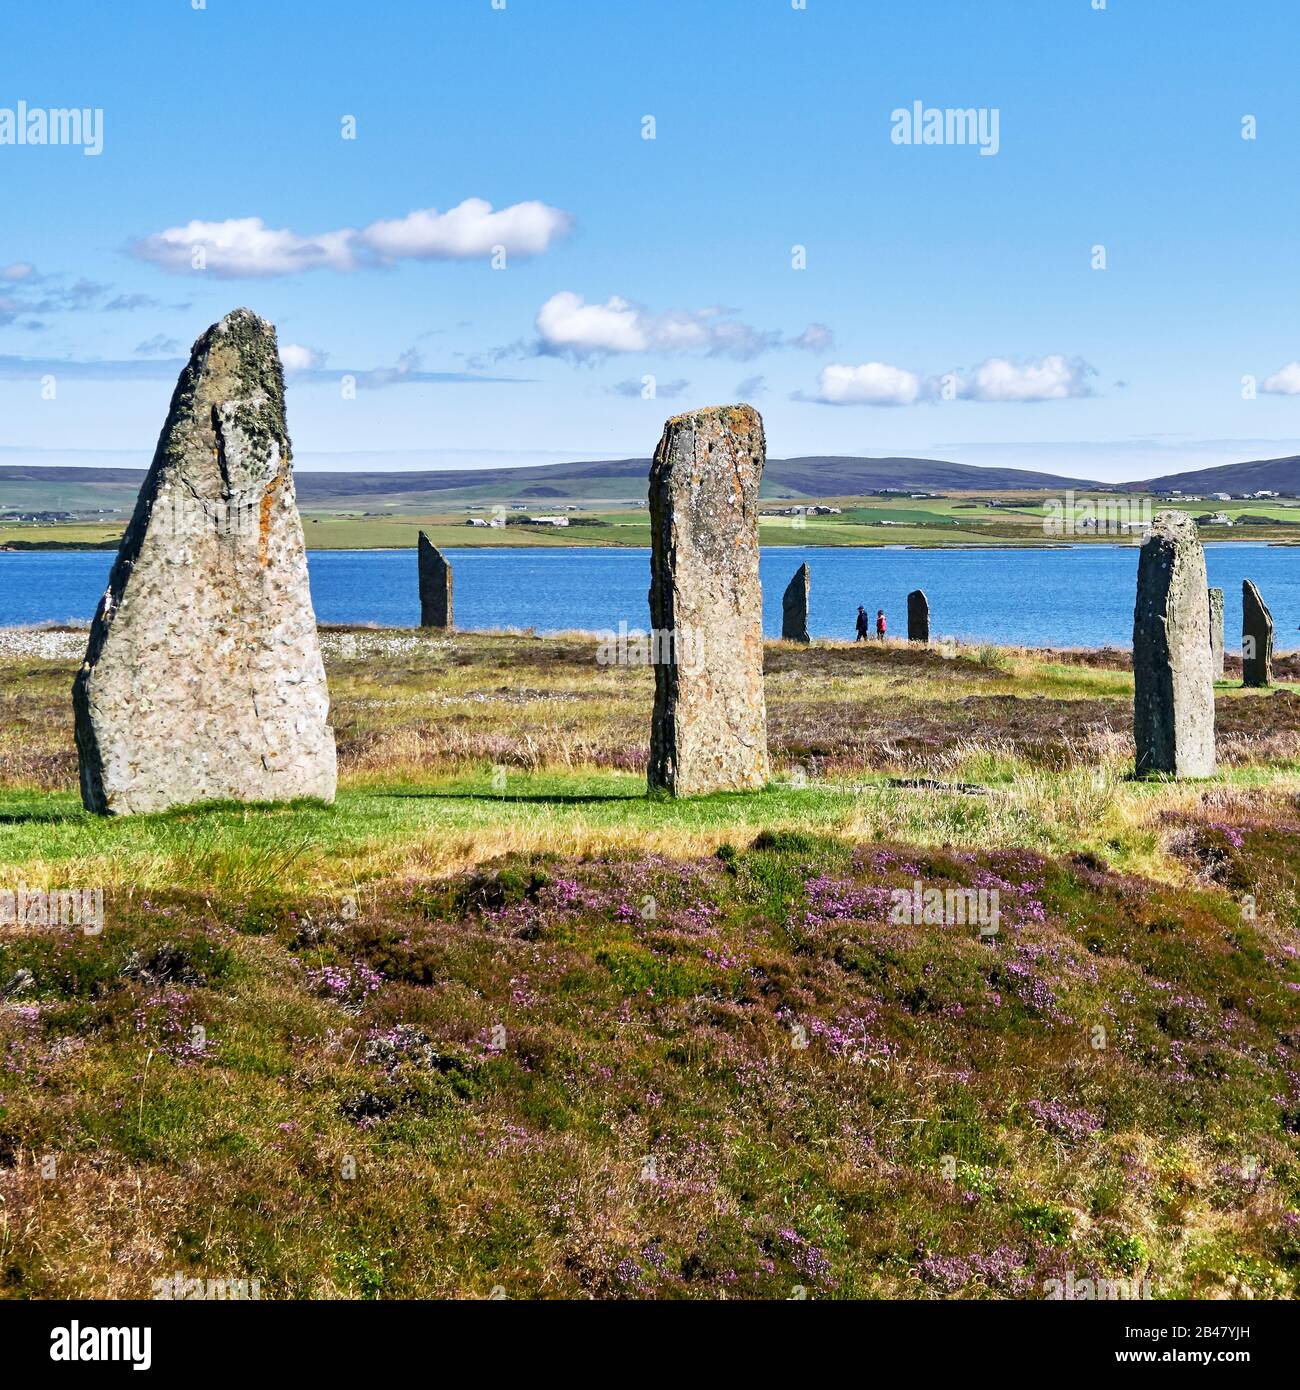 Le isole Orkney sono un arcipelago delle isole Northern Isles della Scozia, nell'Oceano Atlantico, e le sue antiche pietre erette del Ring of Brodgar nelle Isole Orkney al largo della costa settentrionale della Scozia. Questo monumento nel cuore del Neolitico Orkney, patrimonio dell'umanità, si ritiene sia stato costruito tra 4000 e 4500 anni fa. Originariamente costruito con sessanta pietre in un cerchio di oltre 100 metri di fronte, meno della metà delle pietre ancora in piedi. La più alta delle pietre è un po 'più di 4.5 metri (15 piedi) di altezza Foto Stock